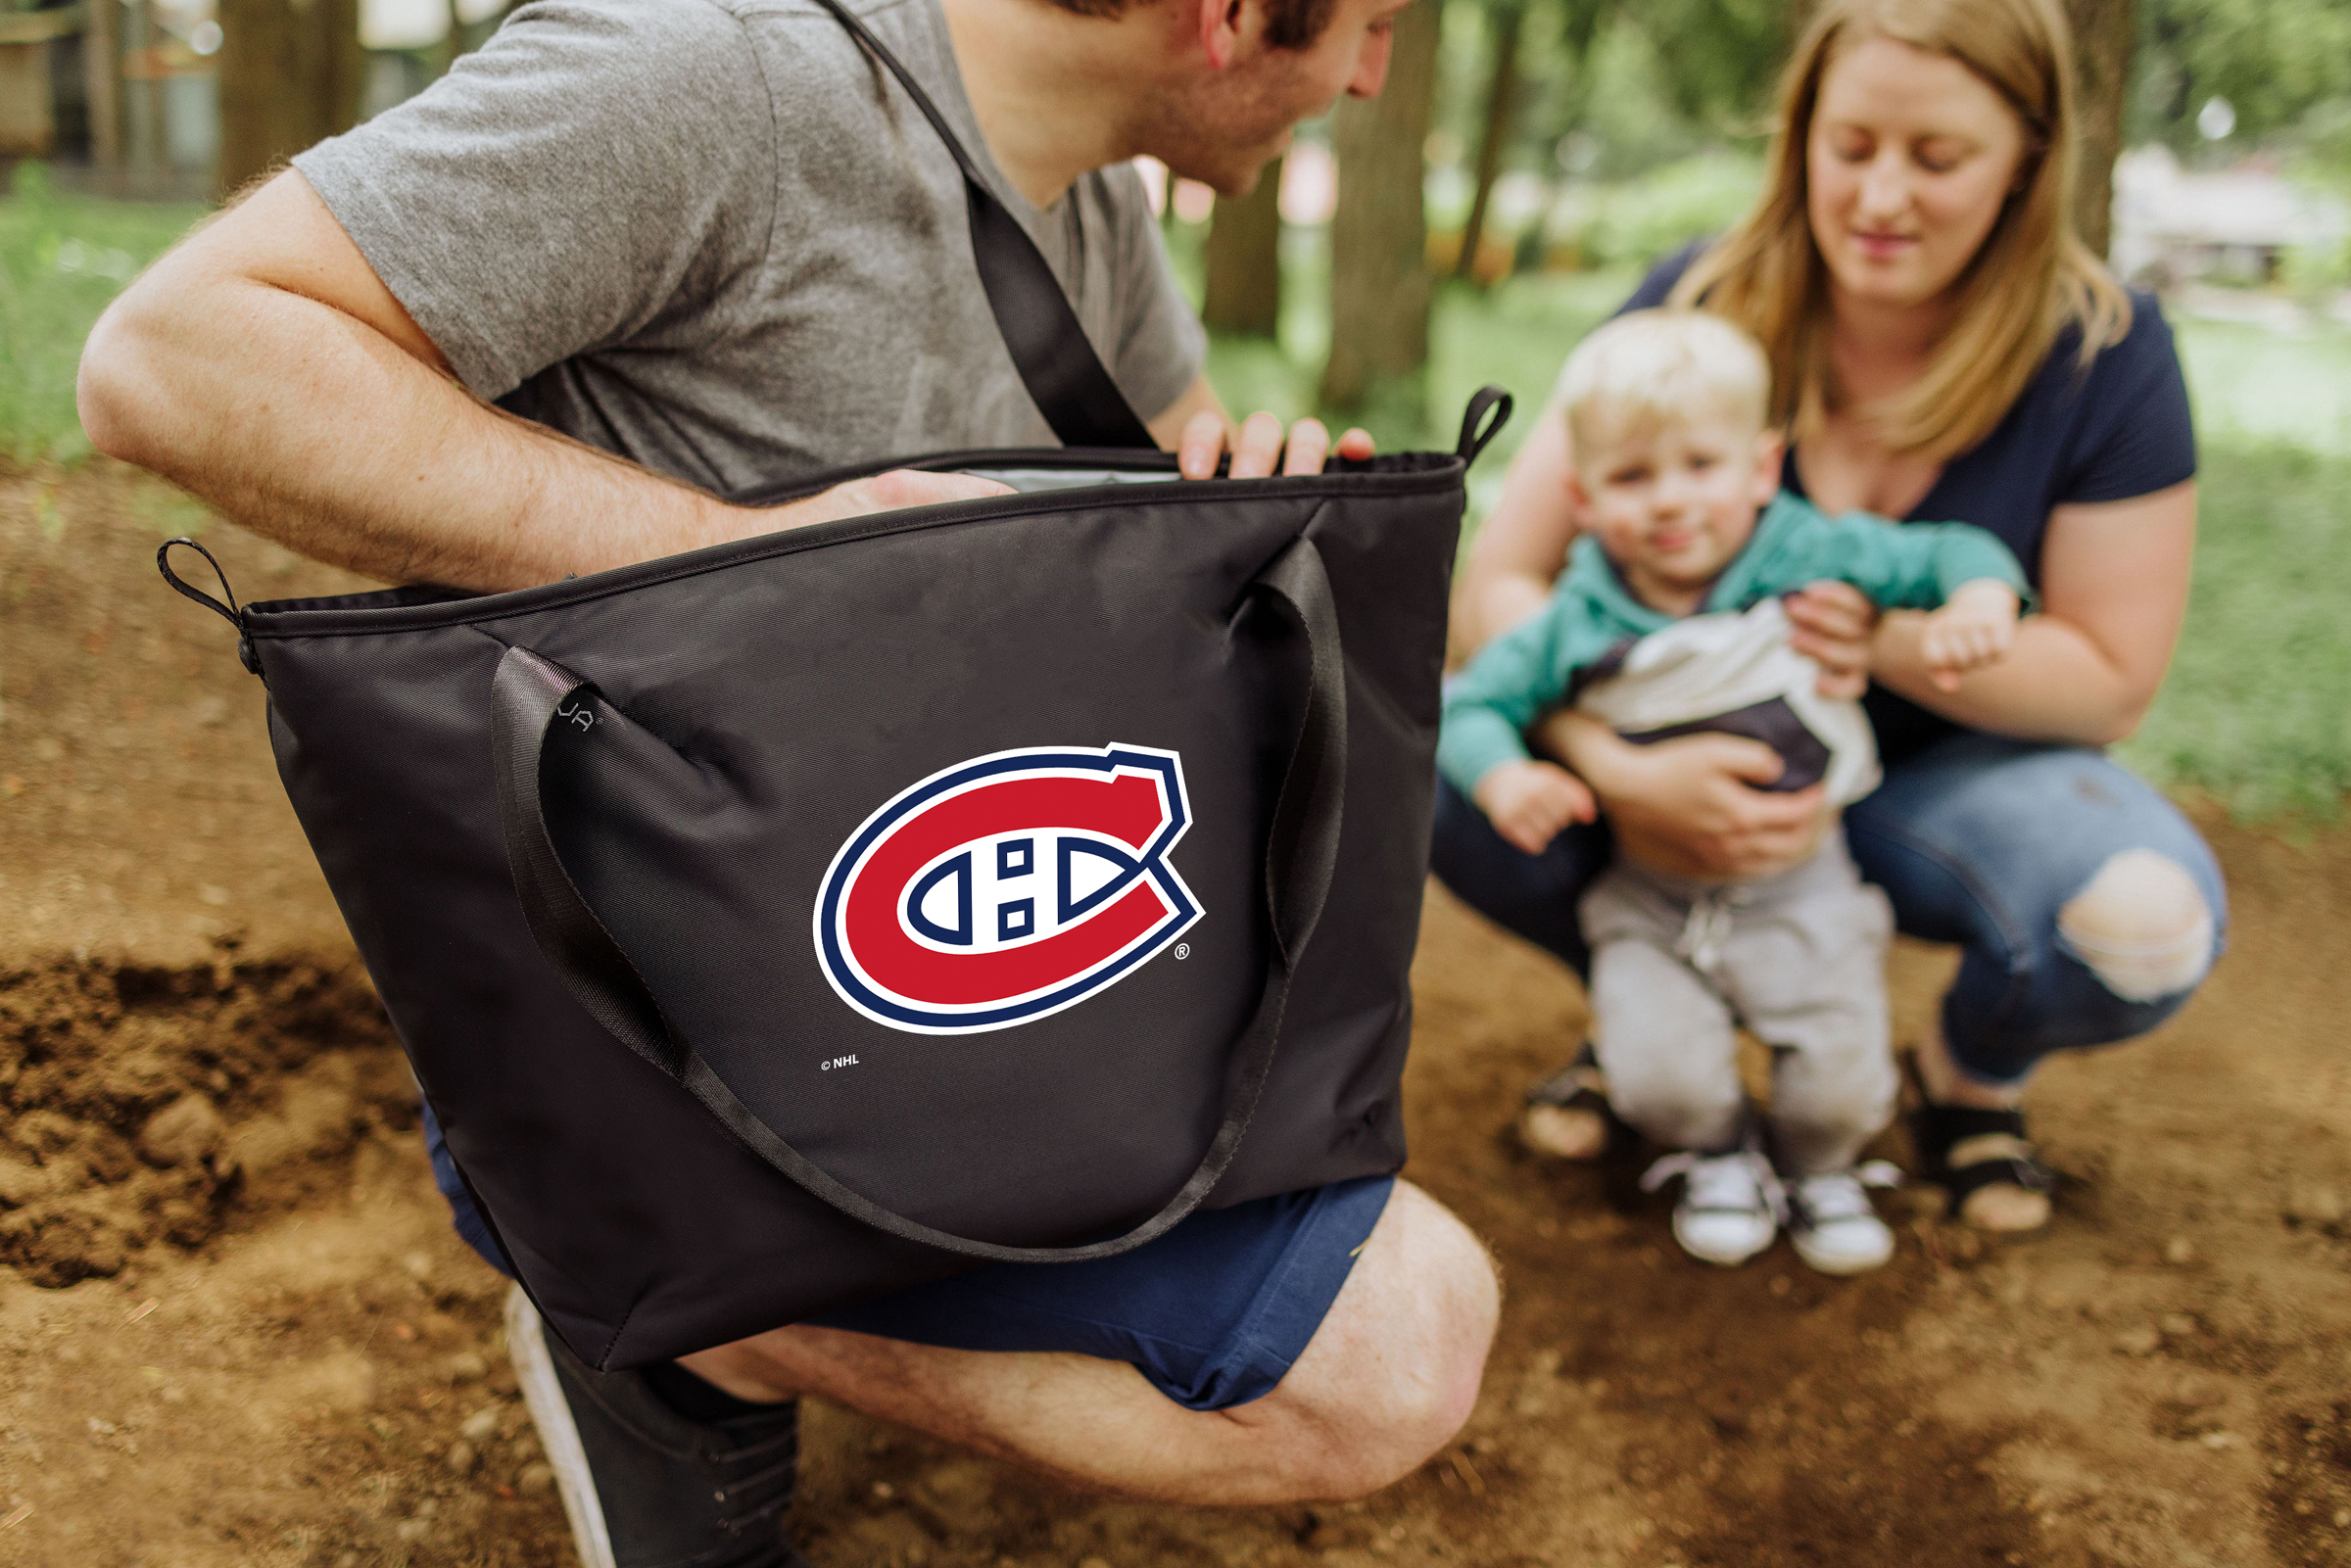 Montreal Canadiens - Tarana Cooler Tote Bag